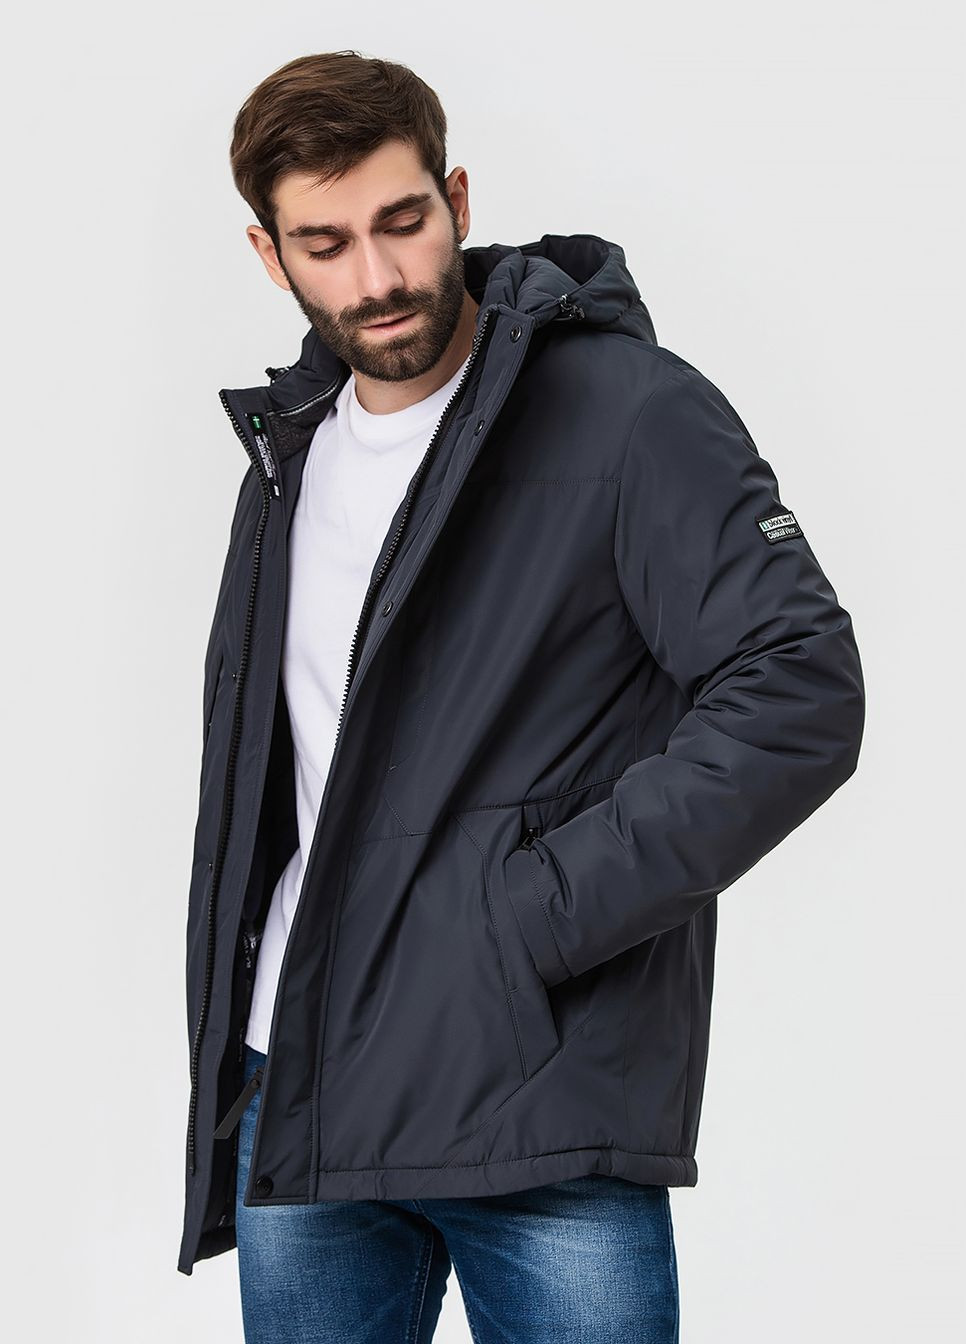 Серая зимняя стильная мужская куртка модель Black Vinyl 23-2239